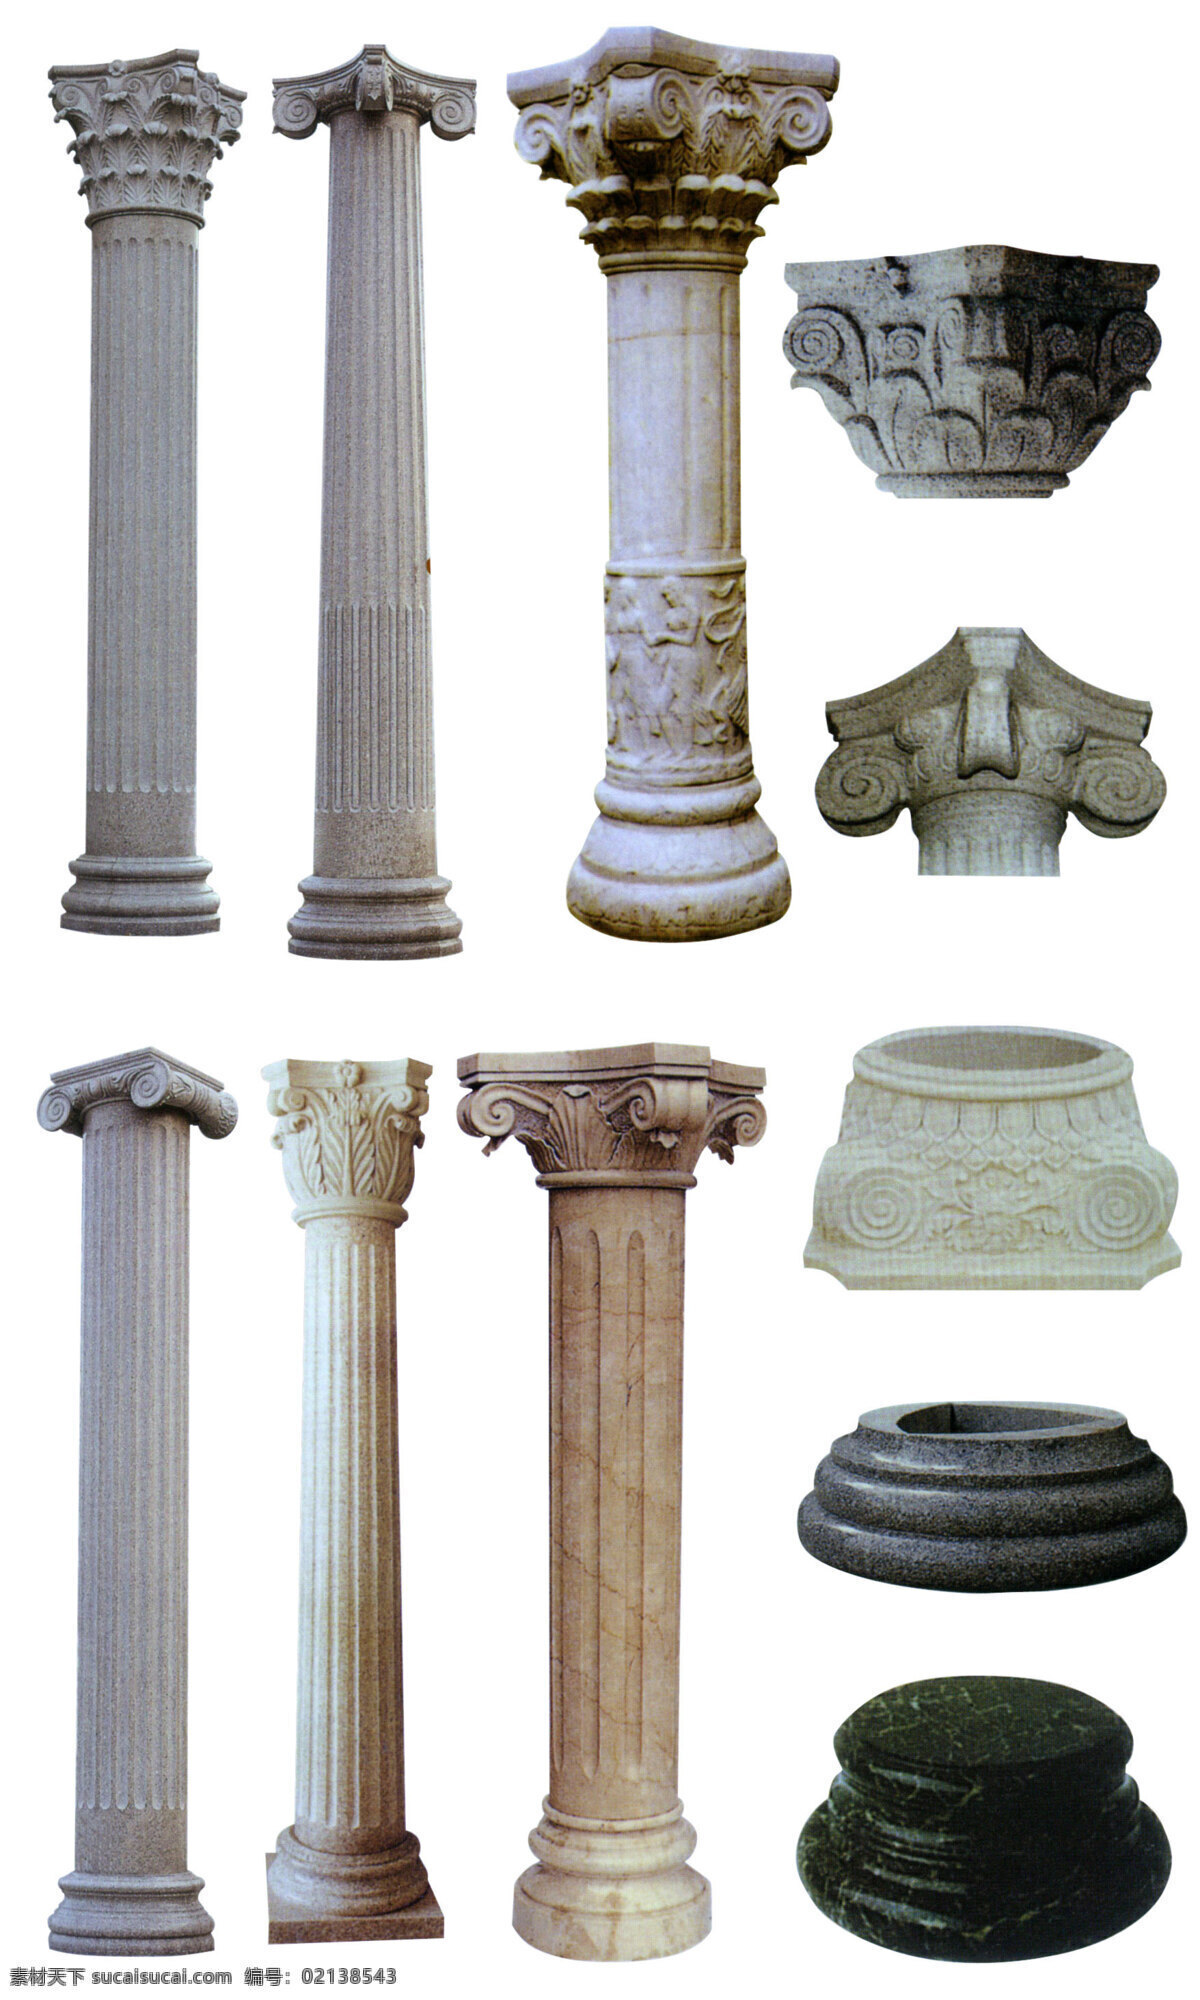 罗马柱图片 惠安石雕 石雕工艺品 石雕罗马柱 生产罗马柱 罗马柱圆柱 惠安石雕系列 建筑园林 园林建筑